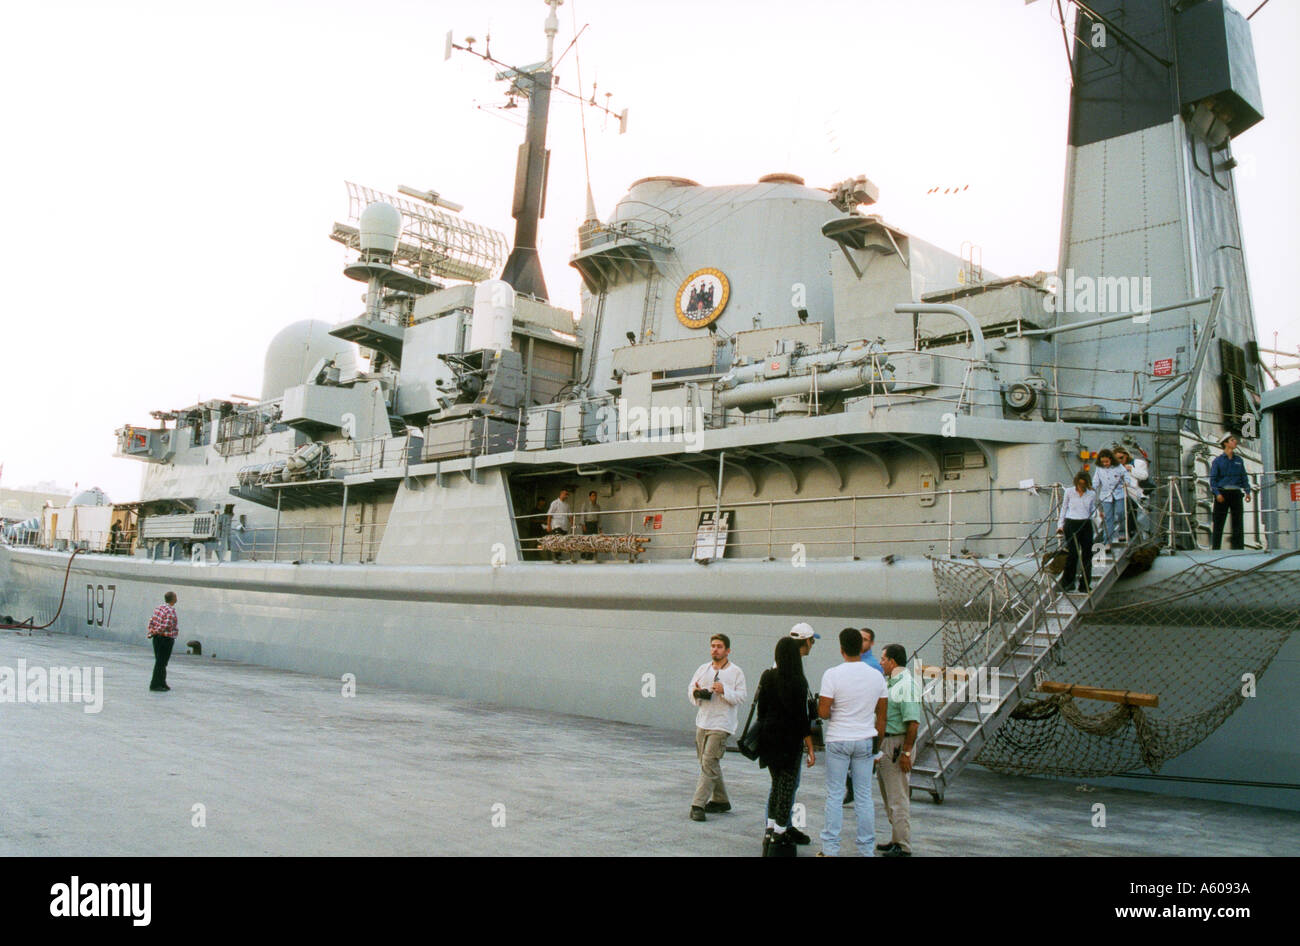 Le HMS Edinburgh royal navy warship visite dans le port de Beyrouth Liban Banque D'Images